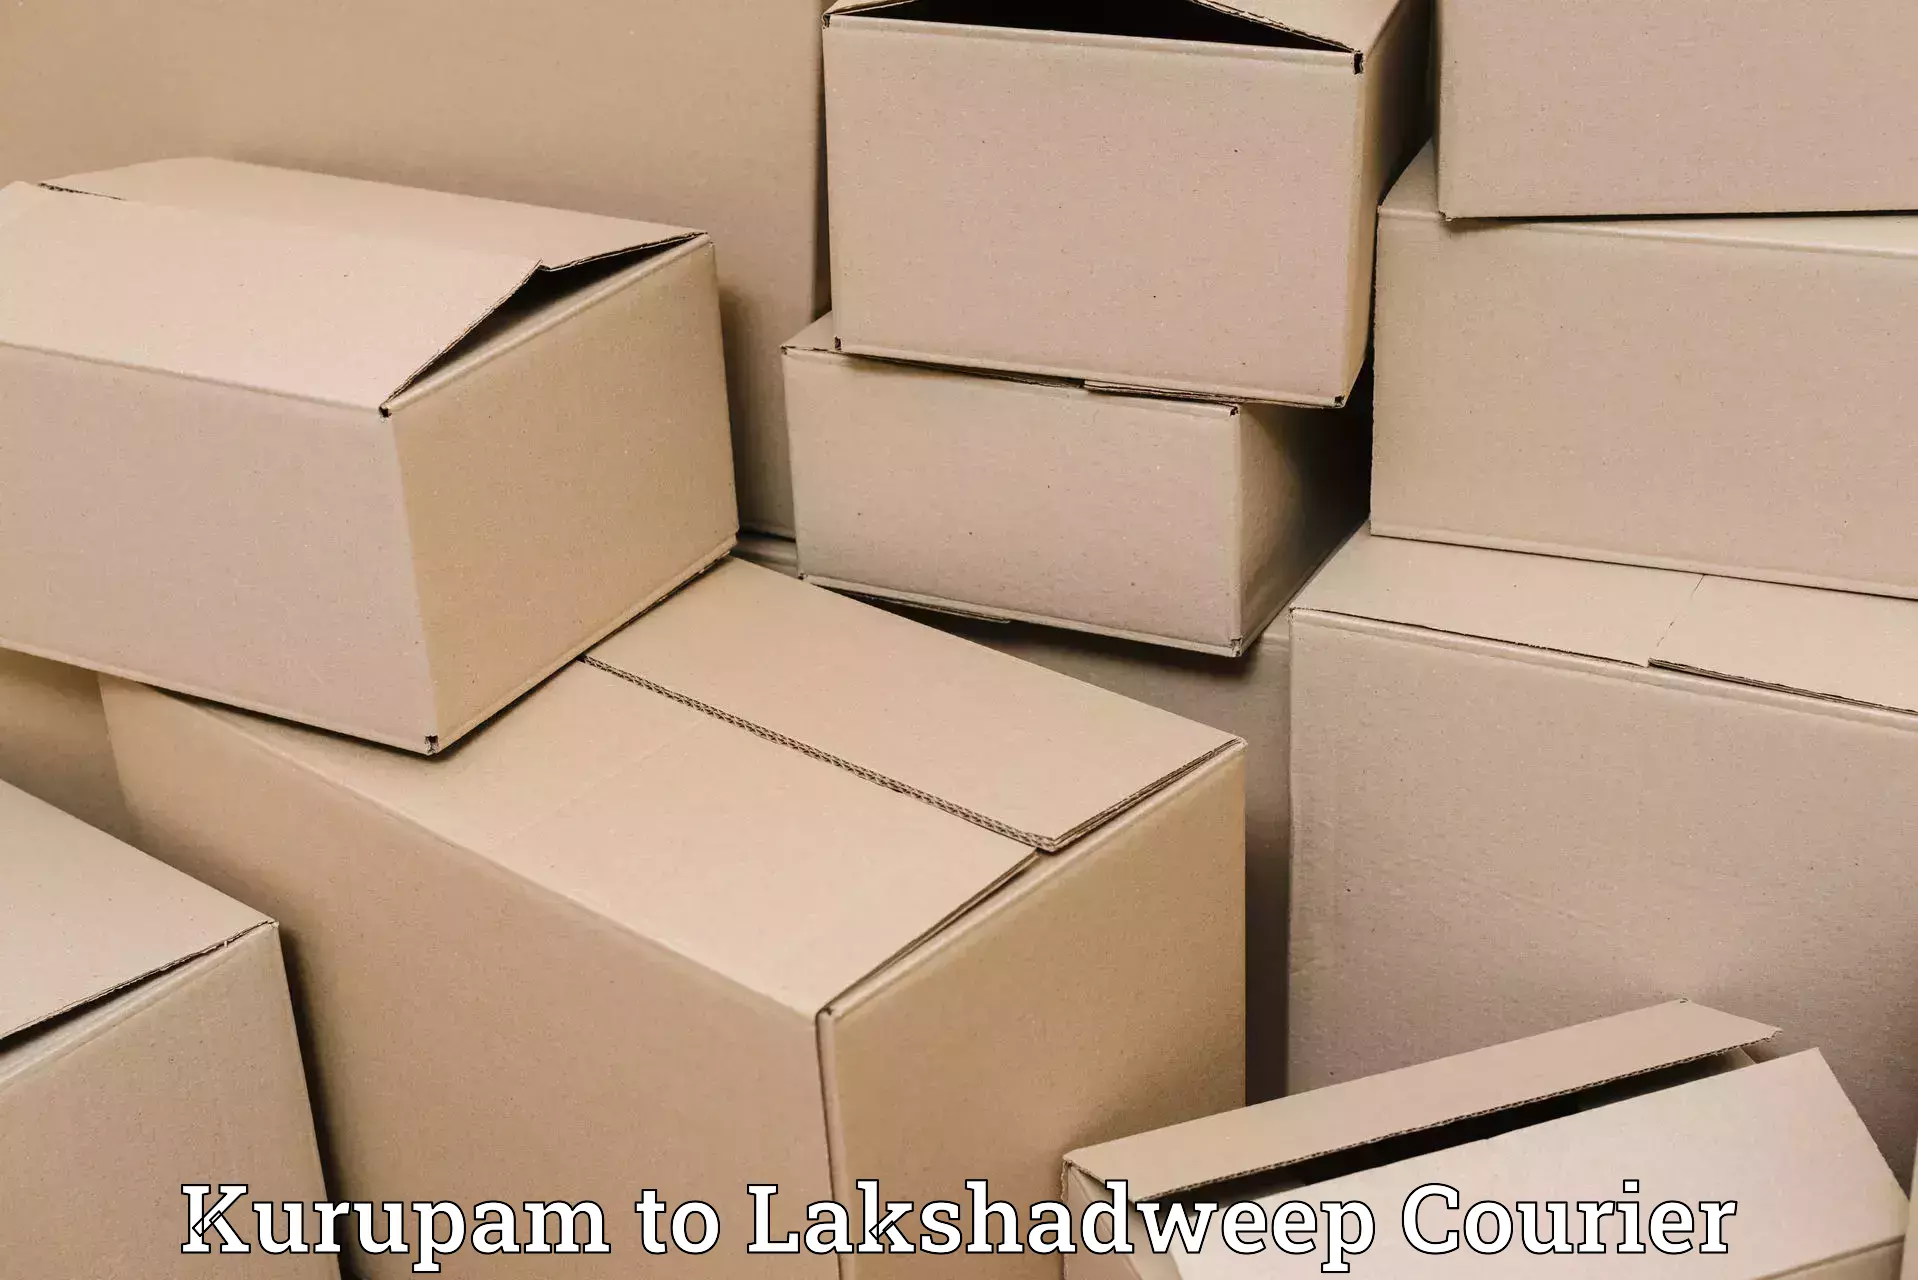 Holiday shipping services Kurupam to Lakshadweep